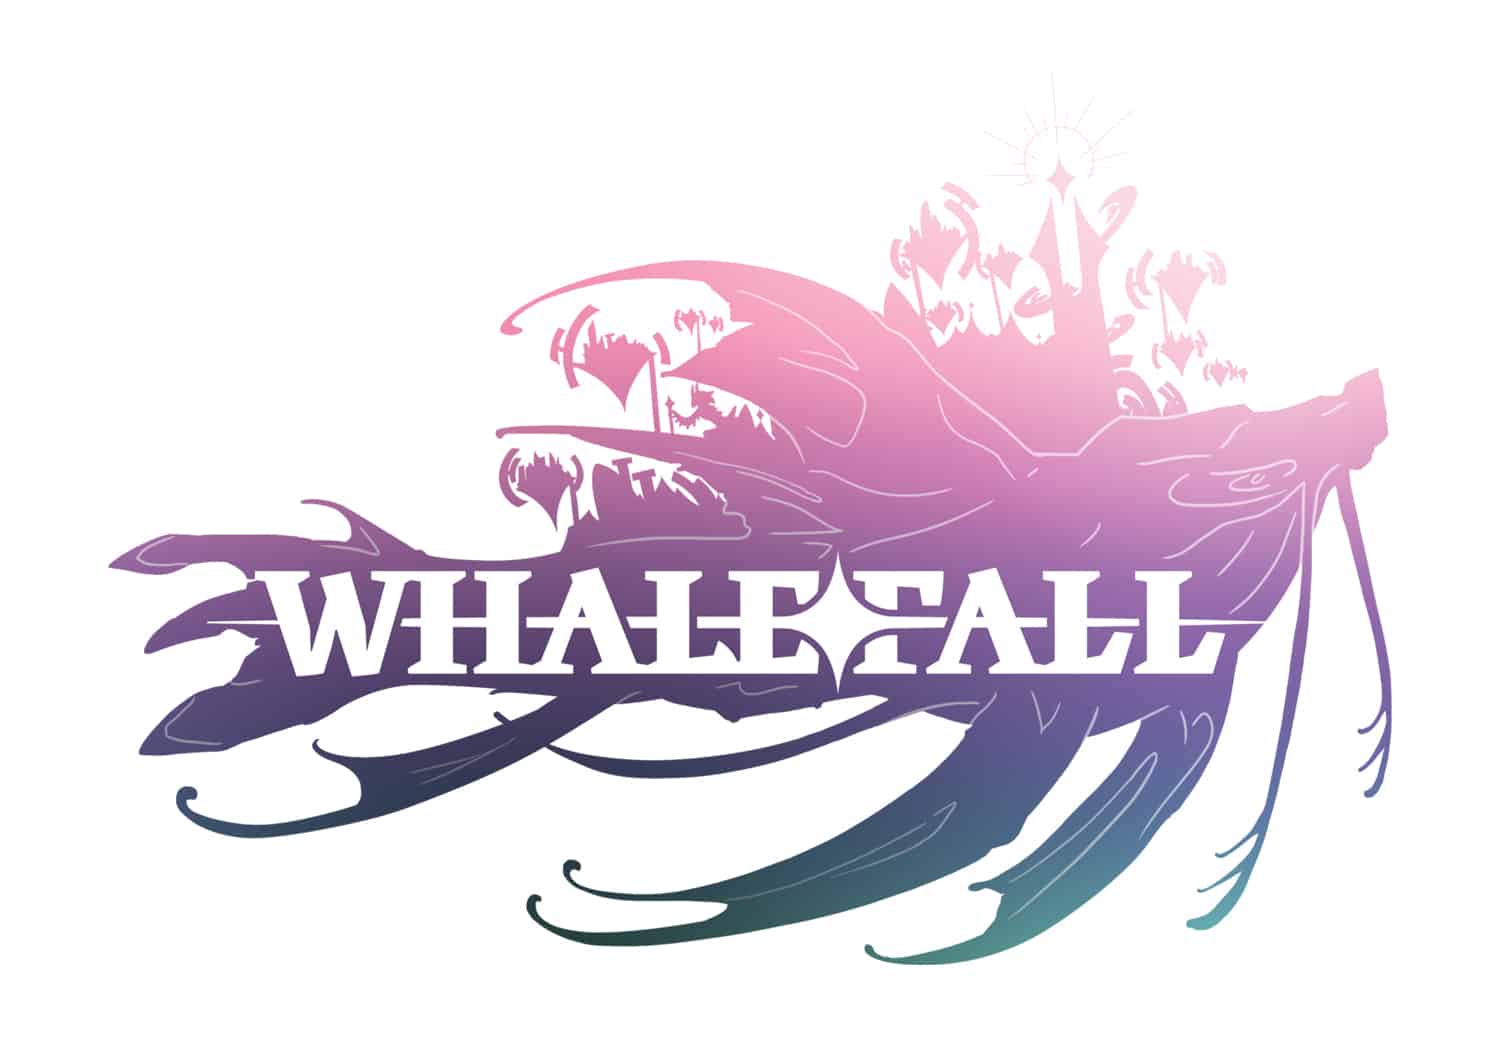 Whalefall